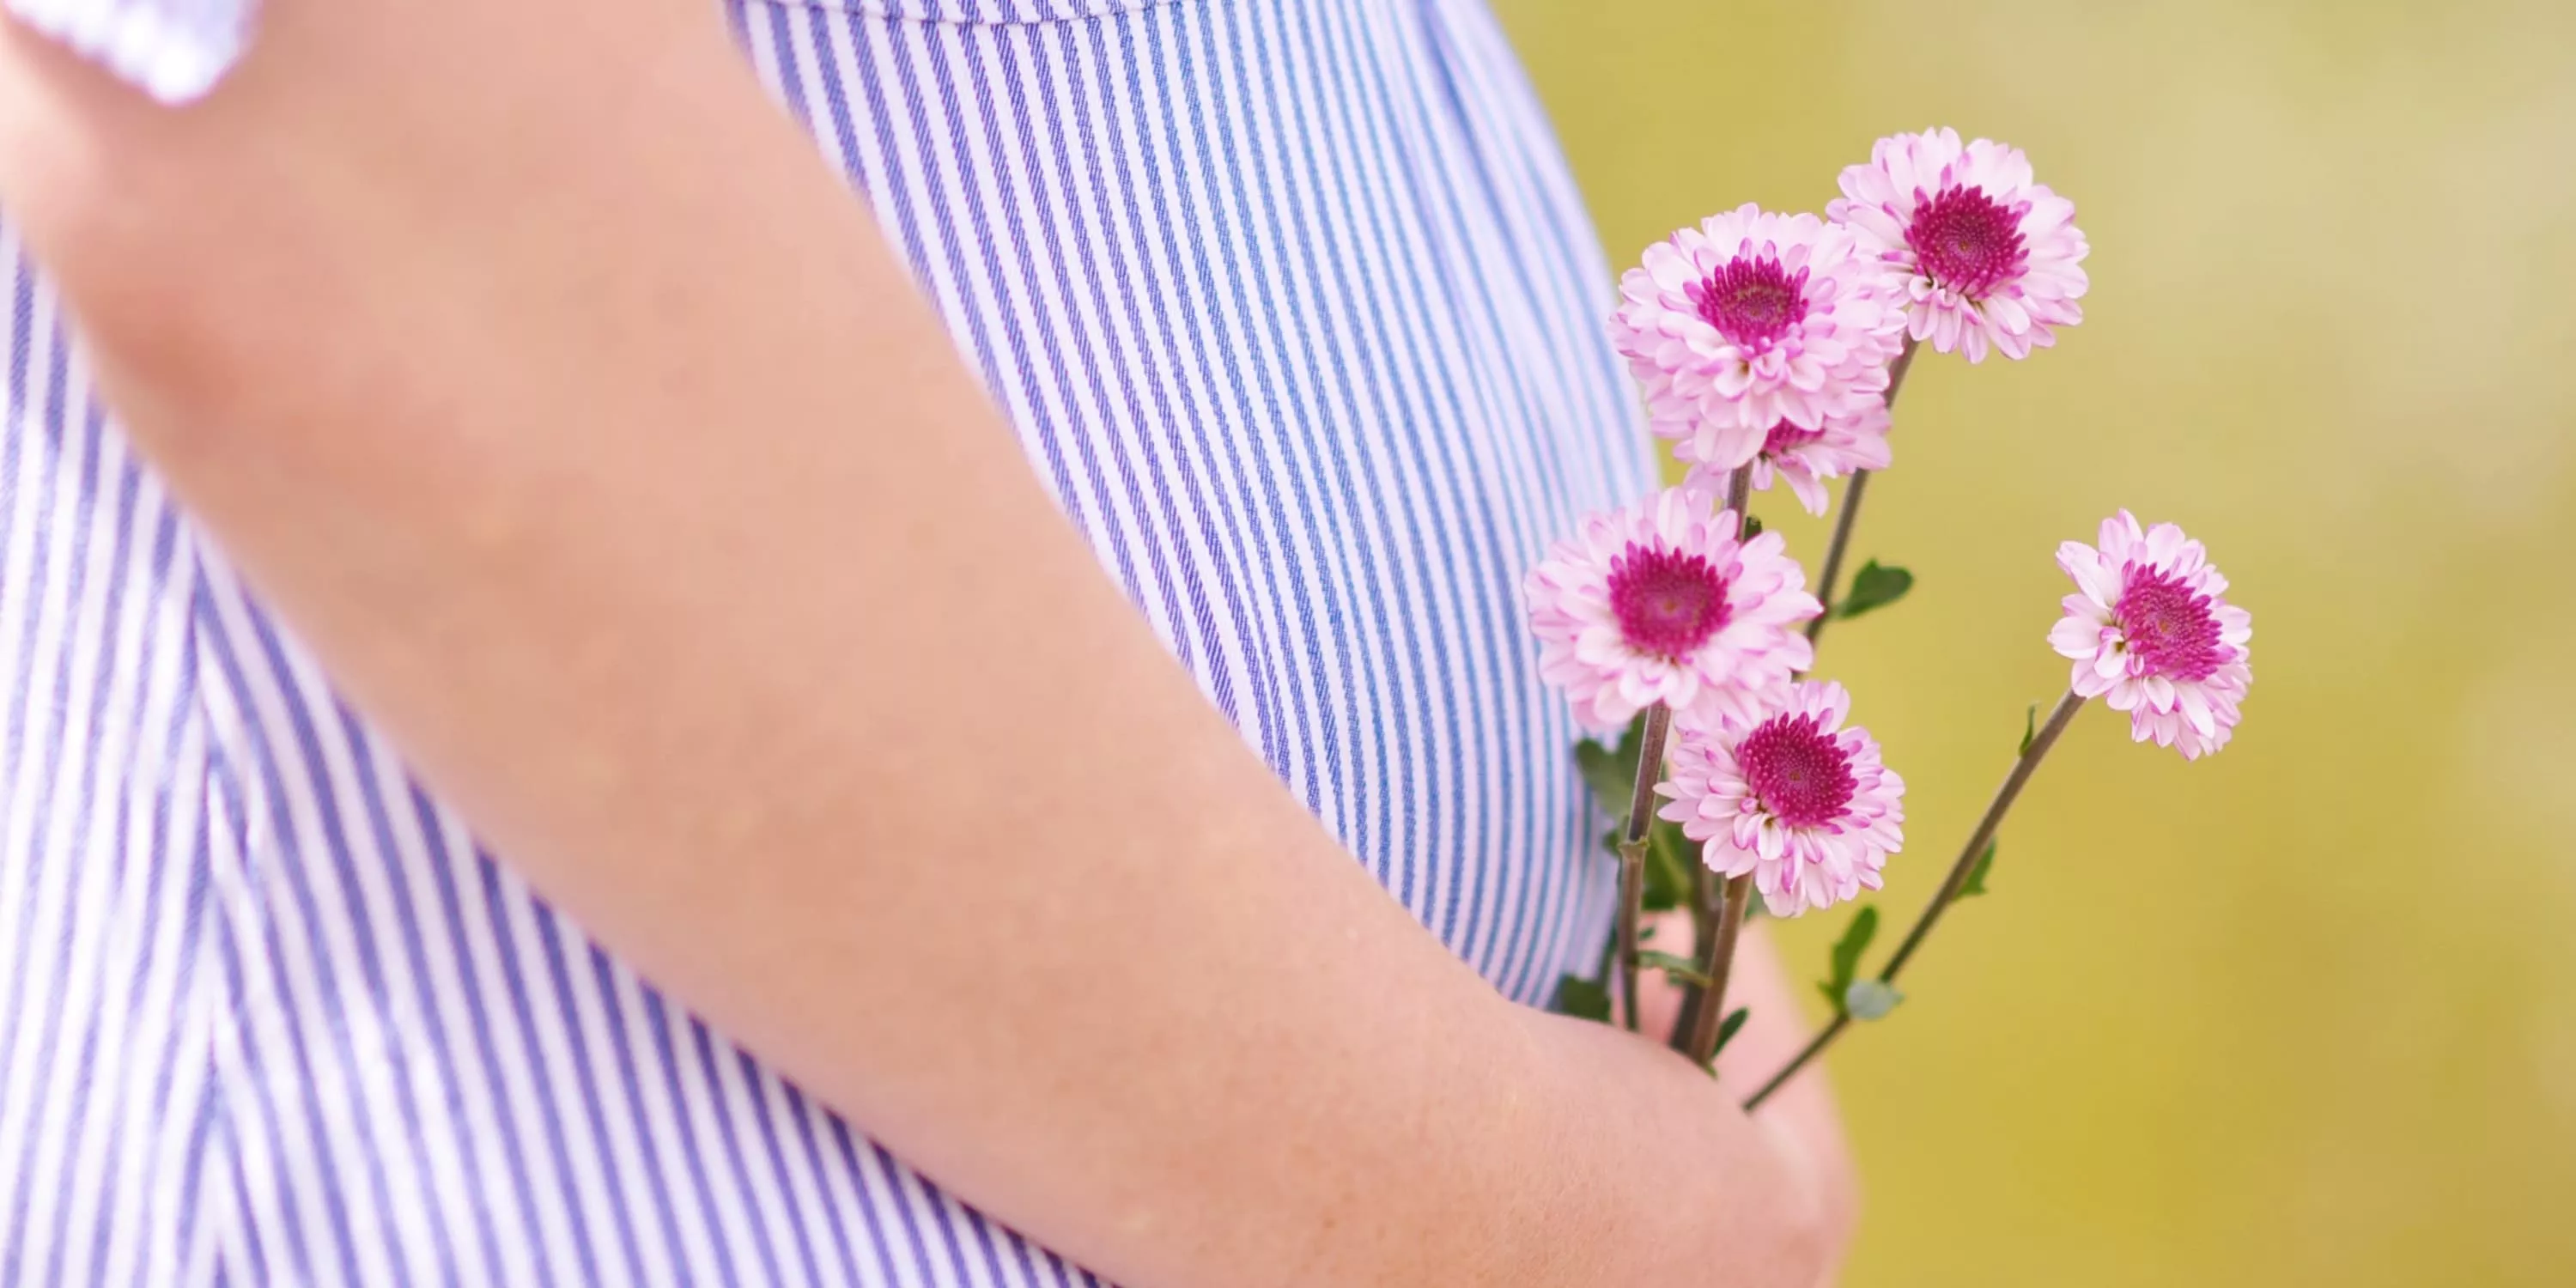 Cliché du ventre d’une future maman tenant un bouquet de fleurs